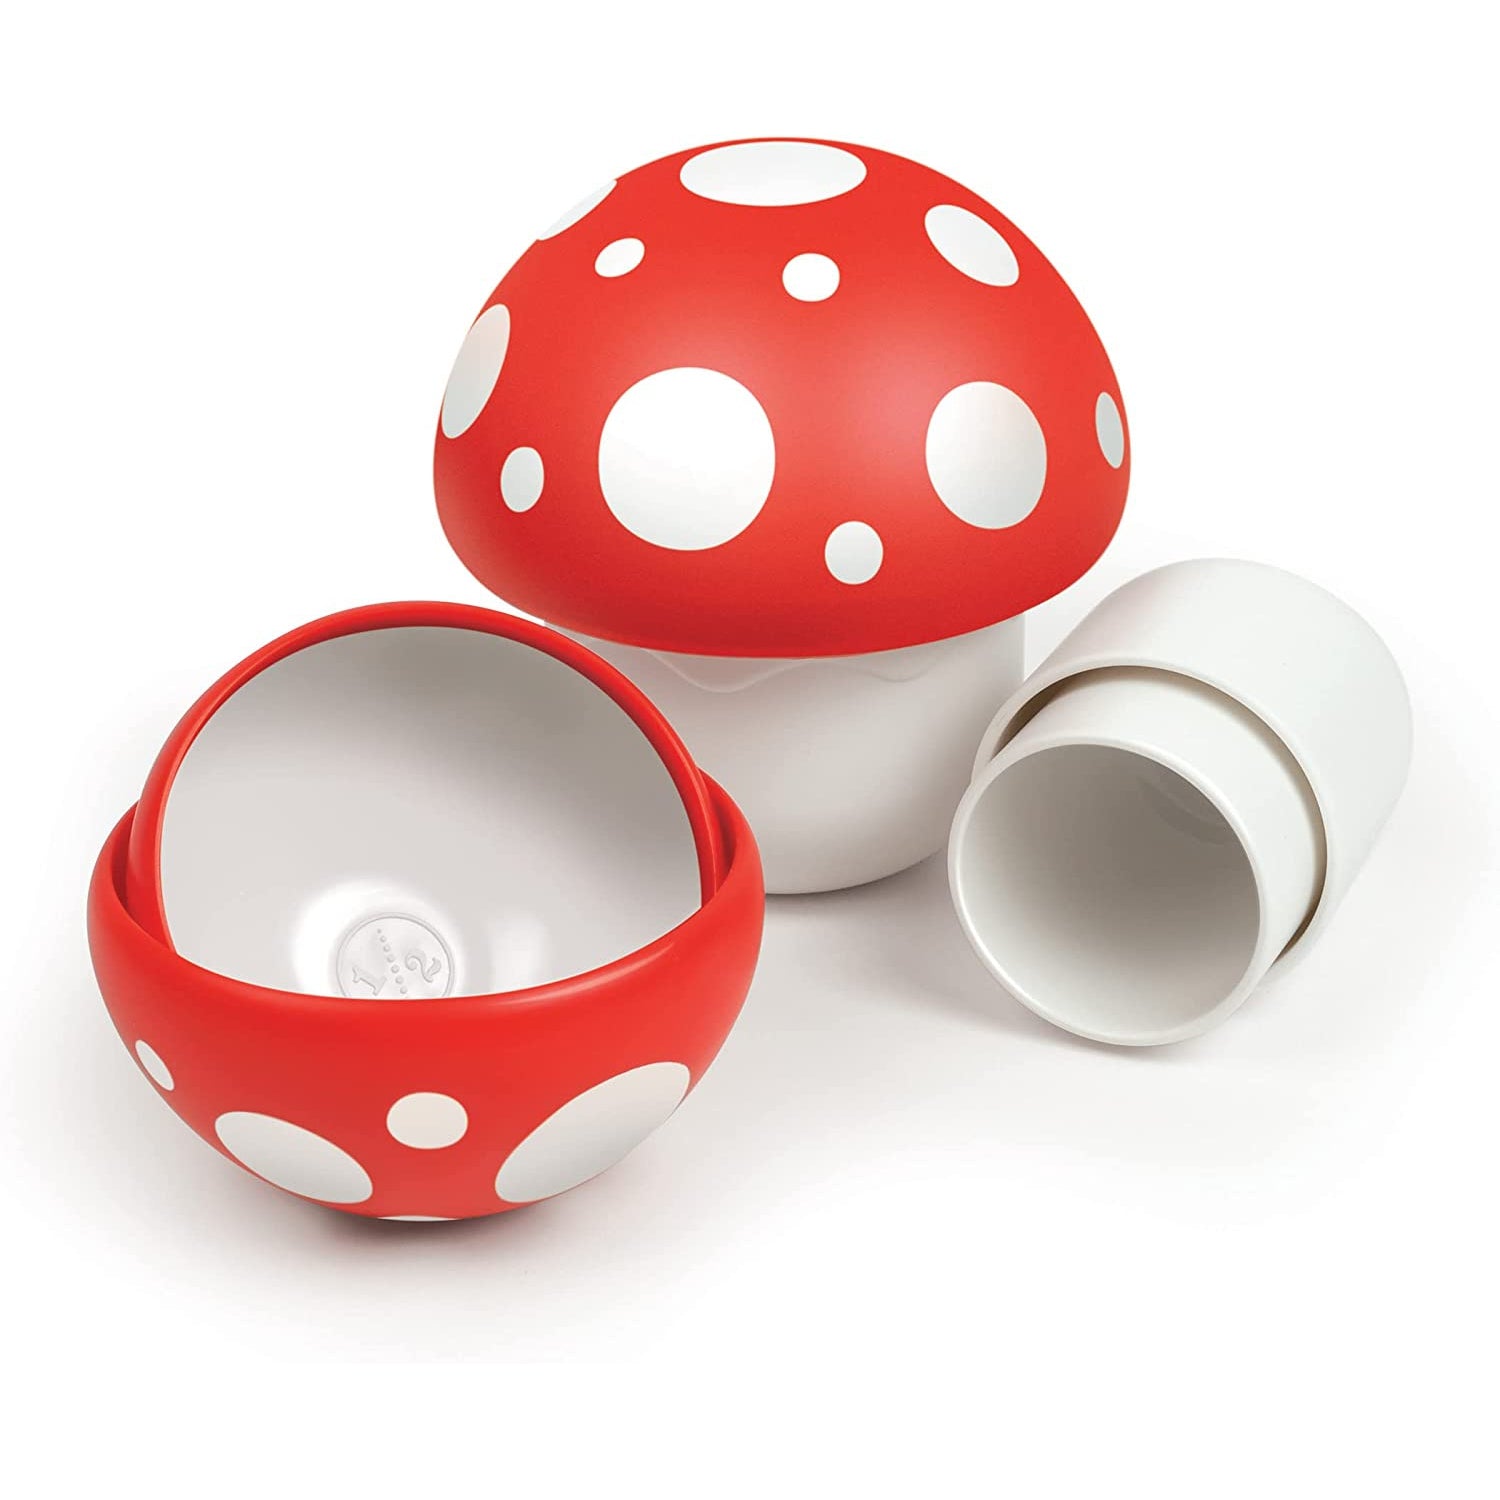 http://shop.getbullish.com/cdn/shop/files/Mushroom-Dry-Measuring-Cups-Cooking-Baking-Set-of-6-Nesting-Mushroom-Cups.jpg?v=1689965531